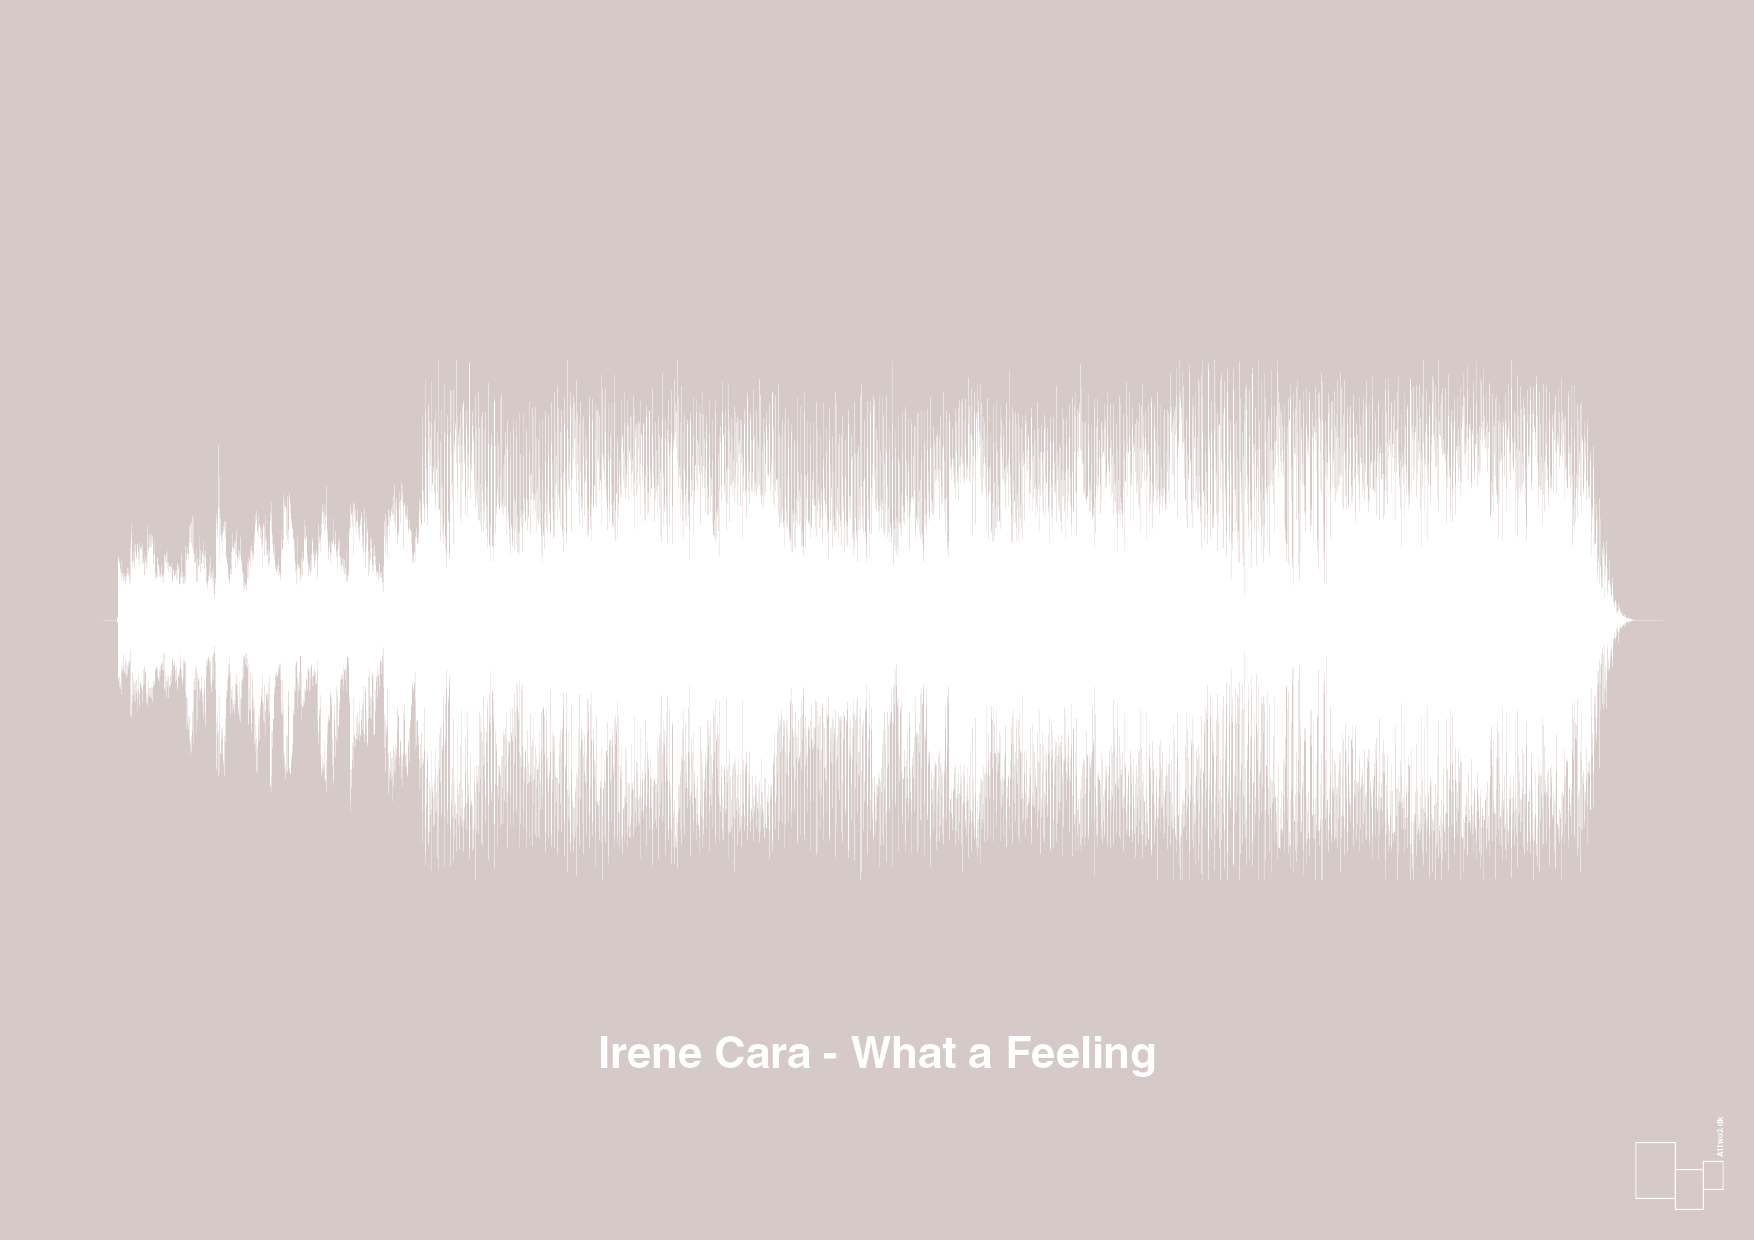 irene cara - what a feeling - Plakat med Musik i Broken Beige